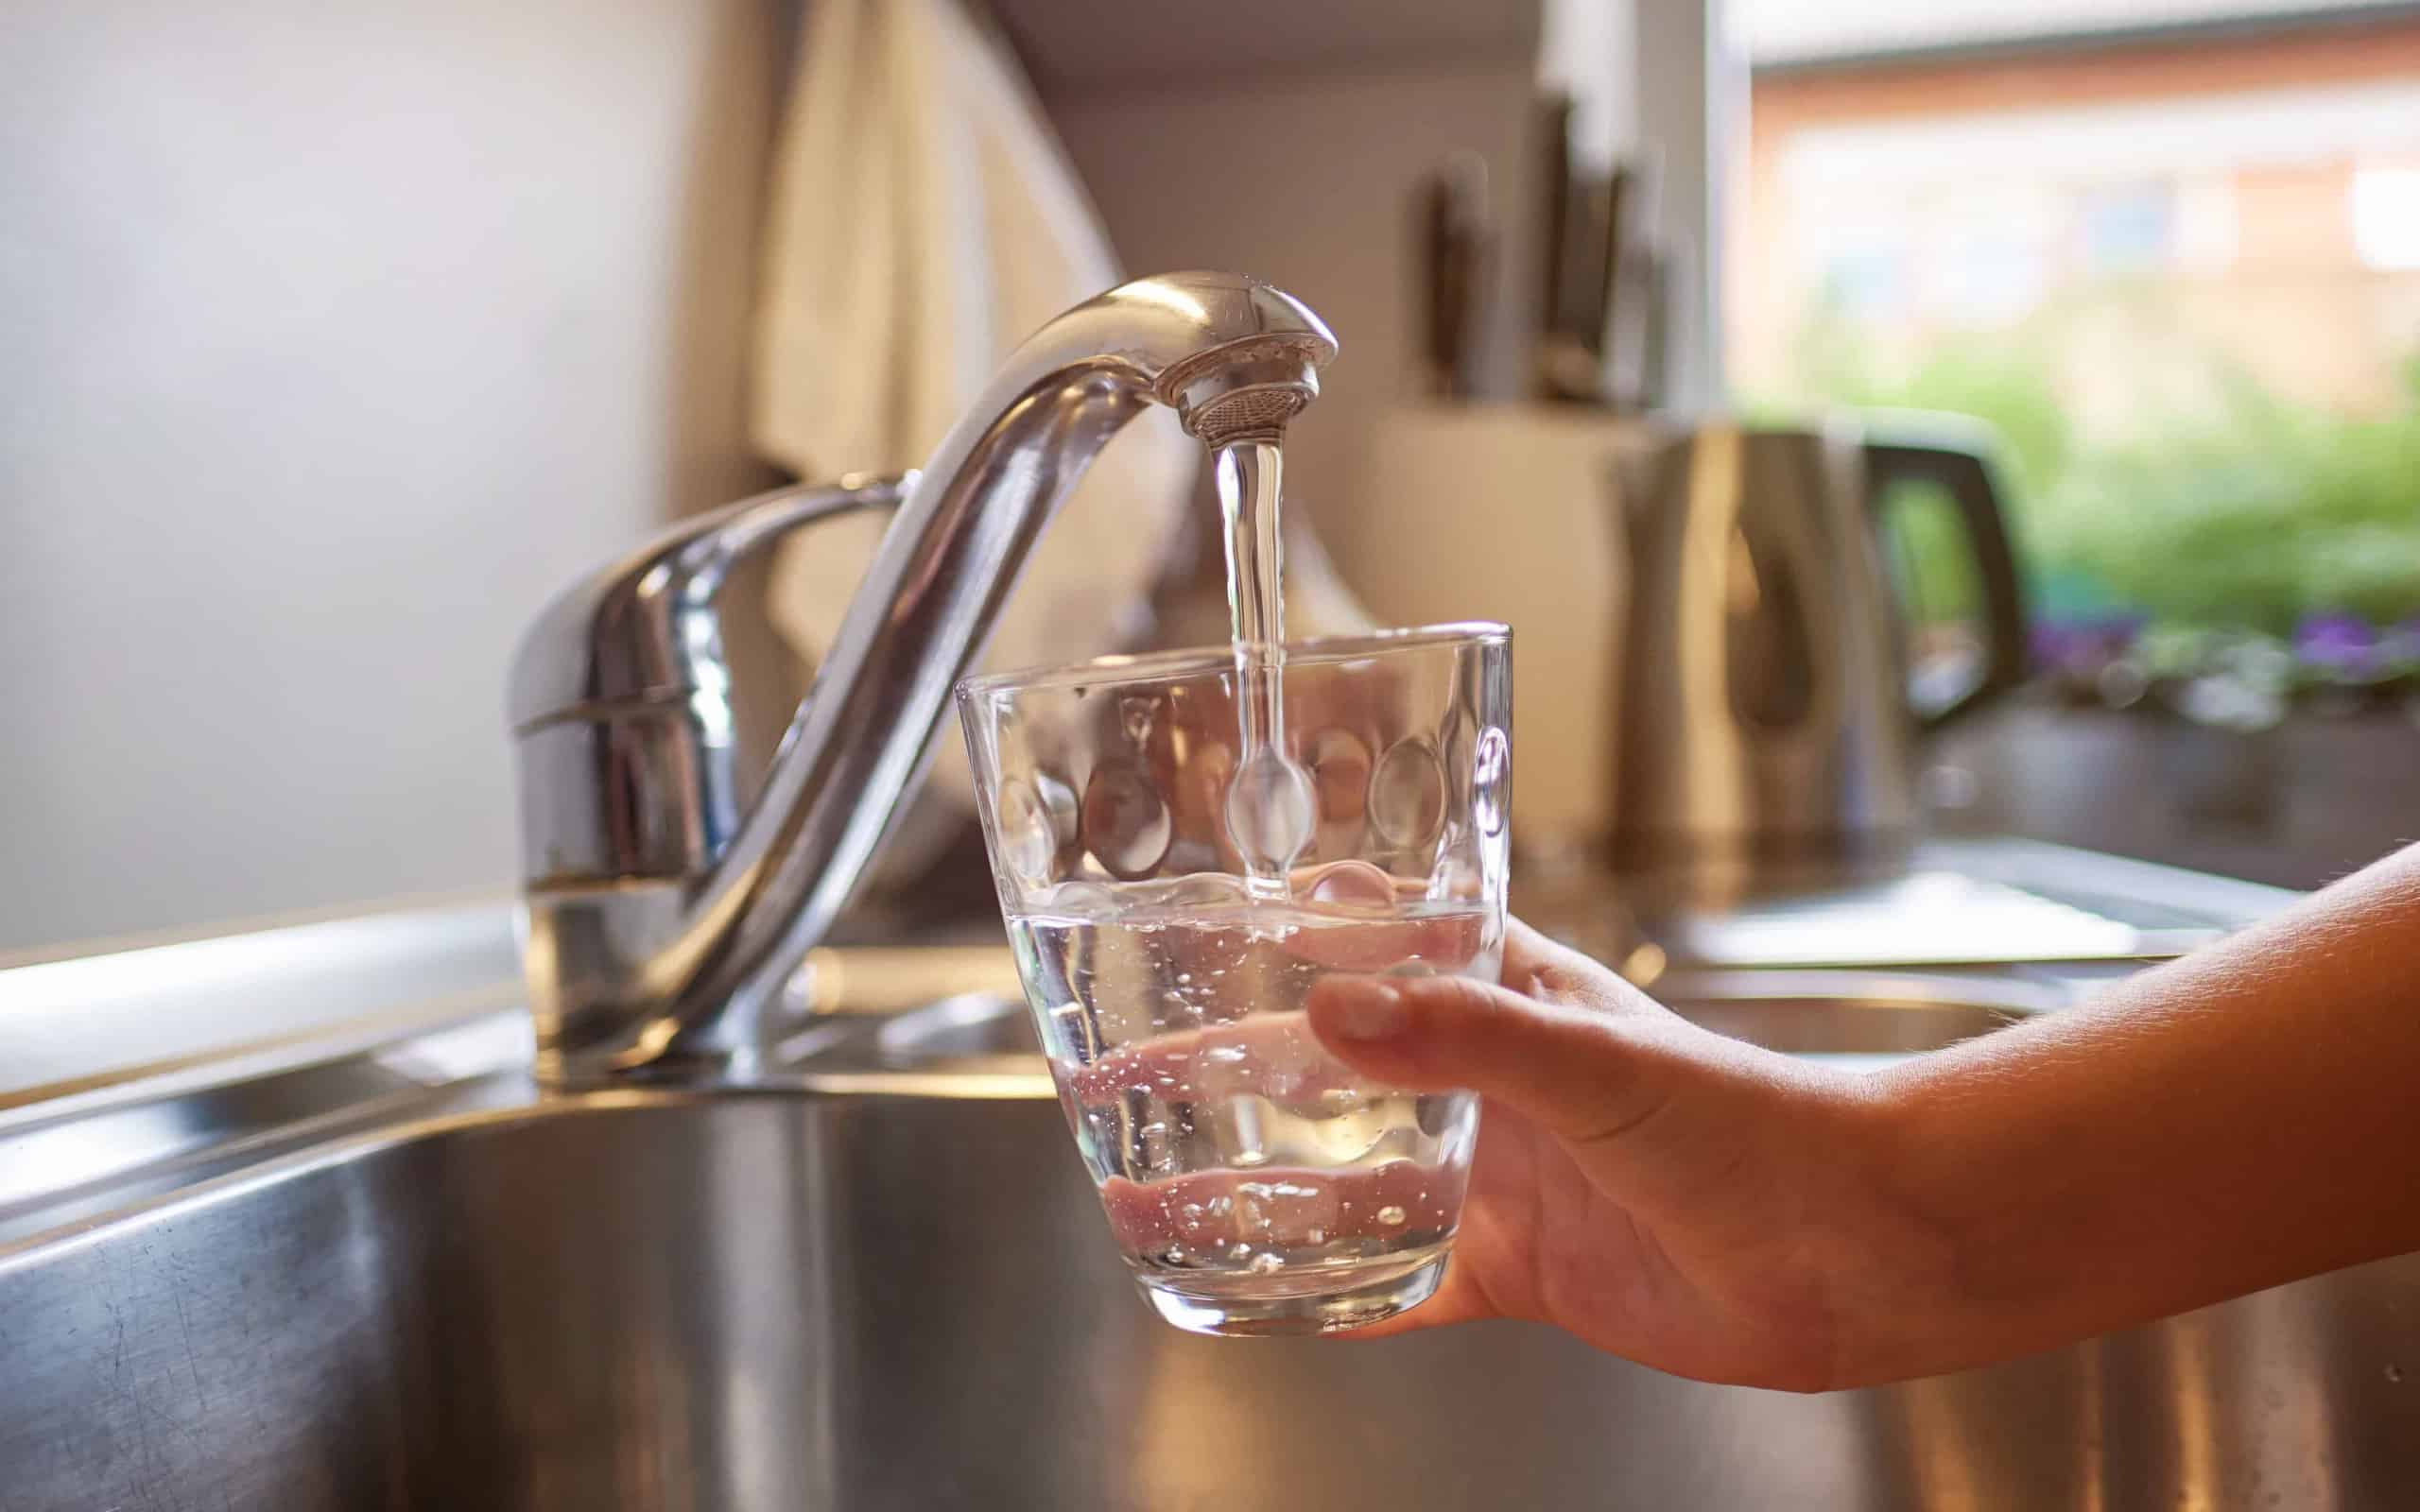 Eine Hand hält ein Glas unter den Wasserhahn in einer Küche und befült es mit Leitungswasser.